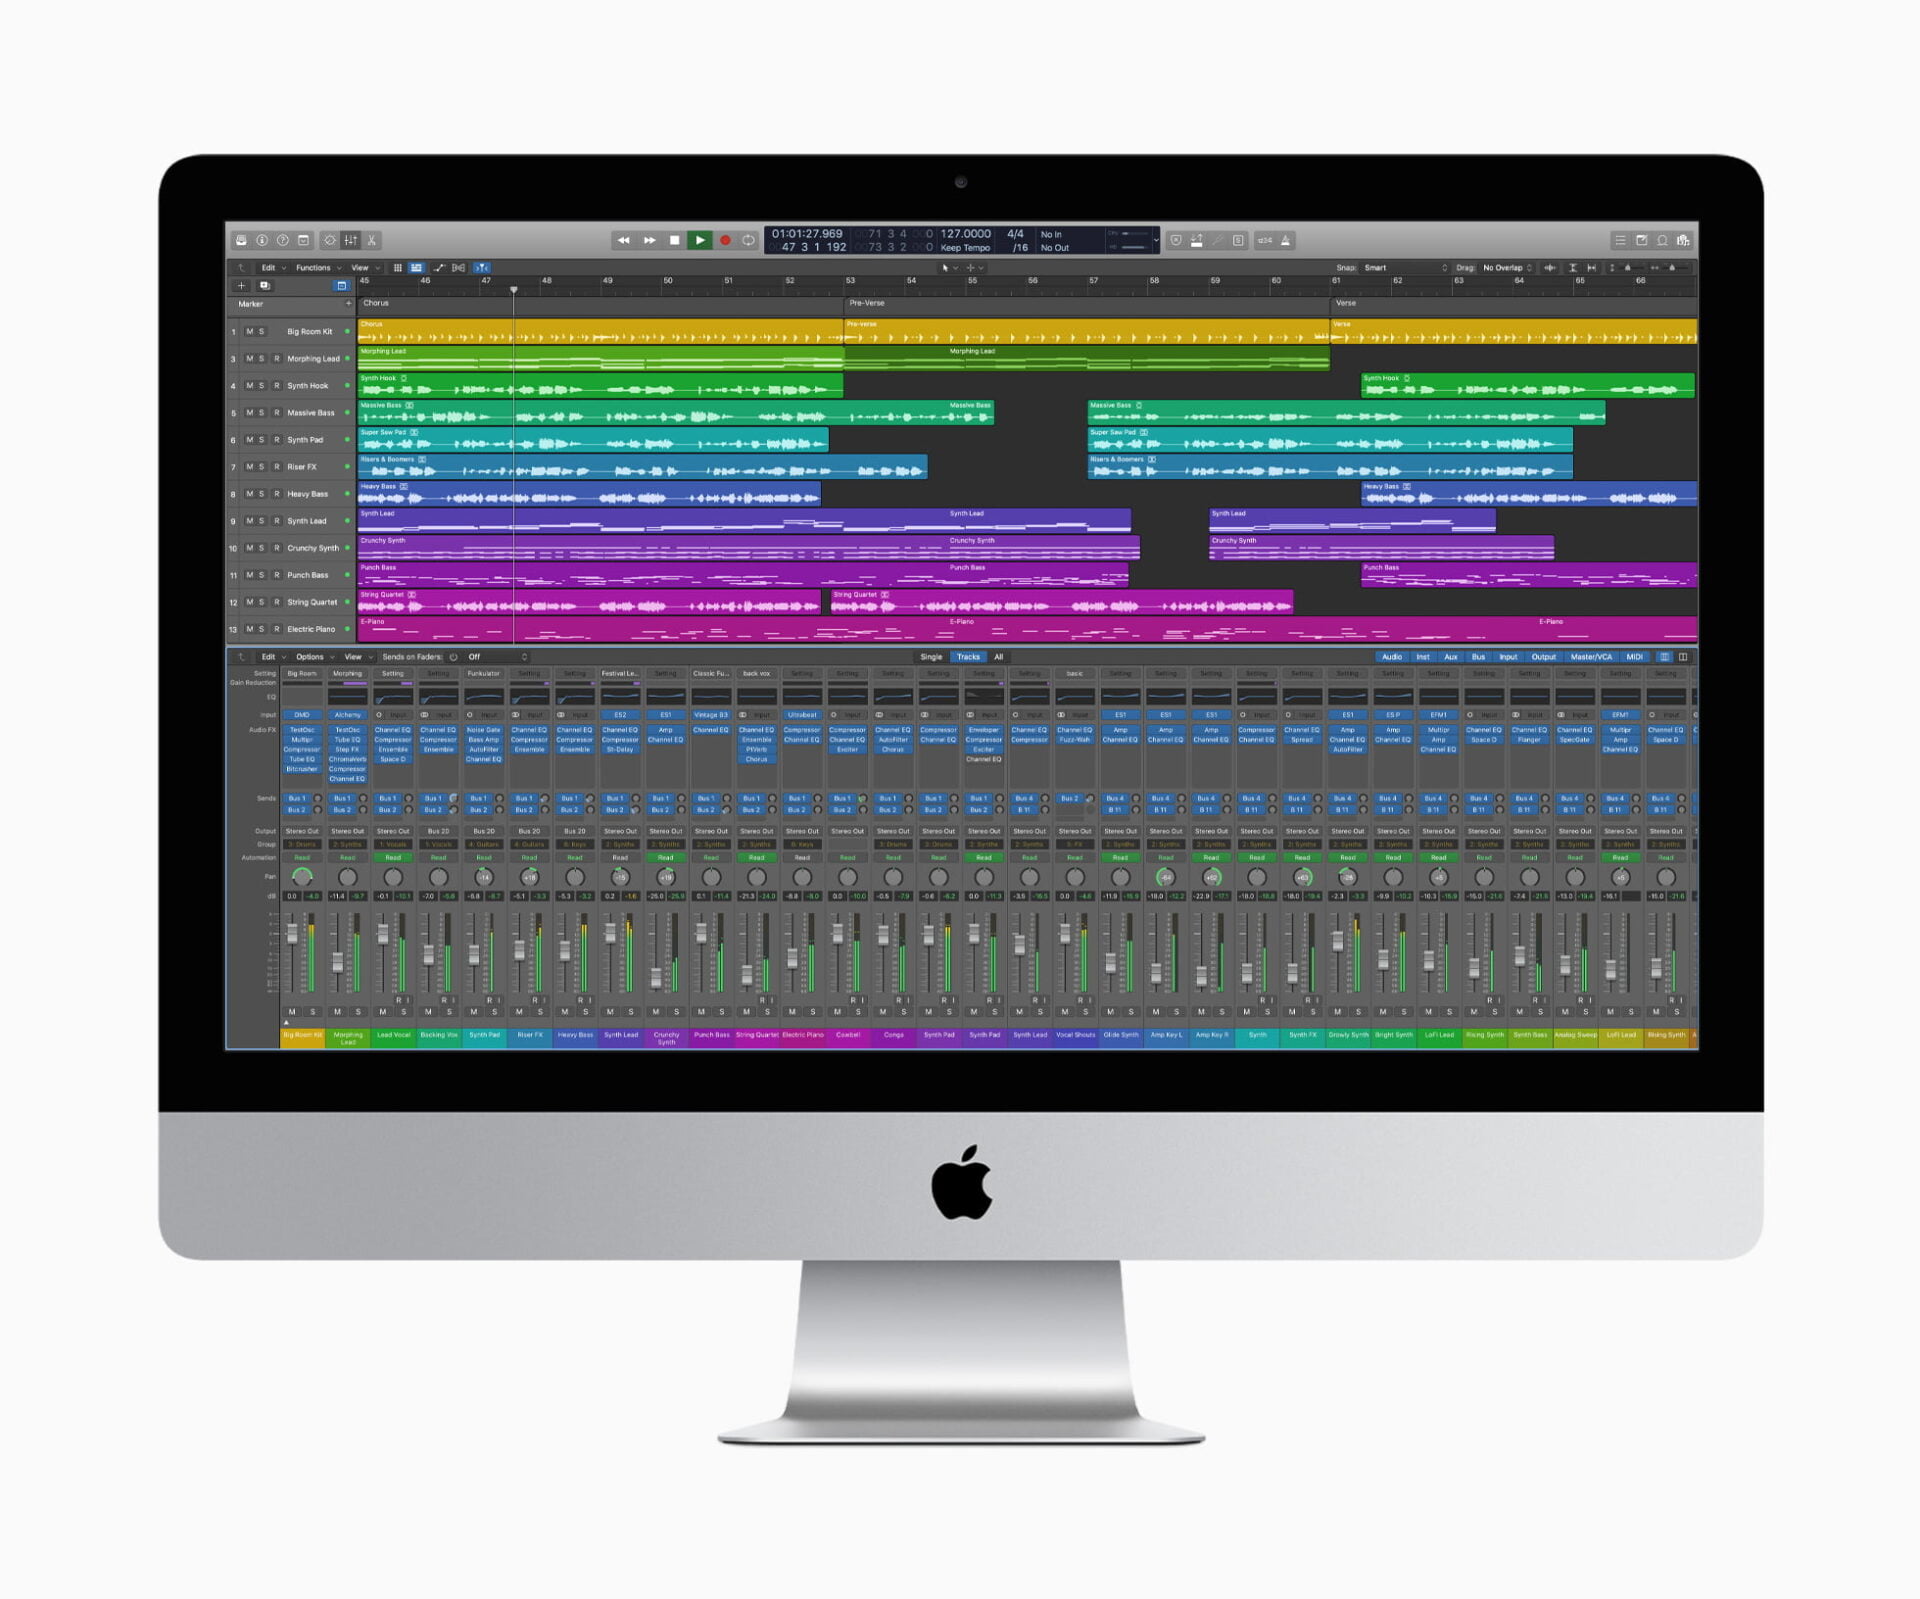 iMac running Logic Pro